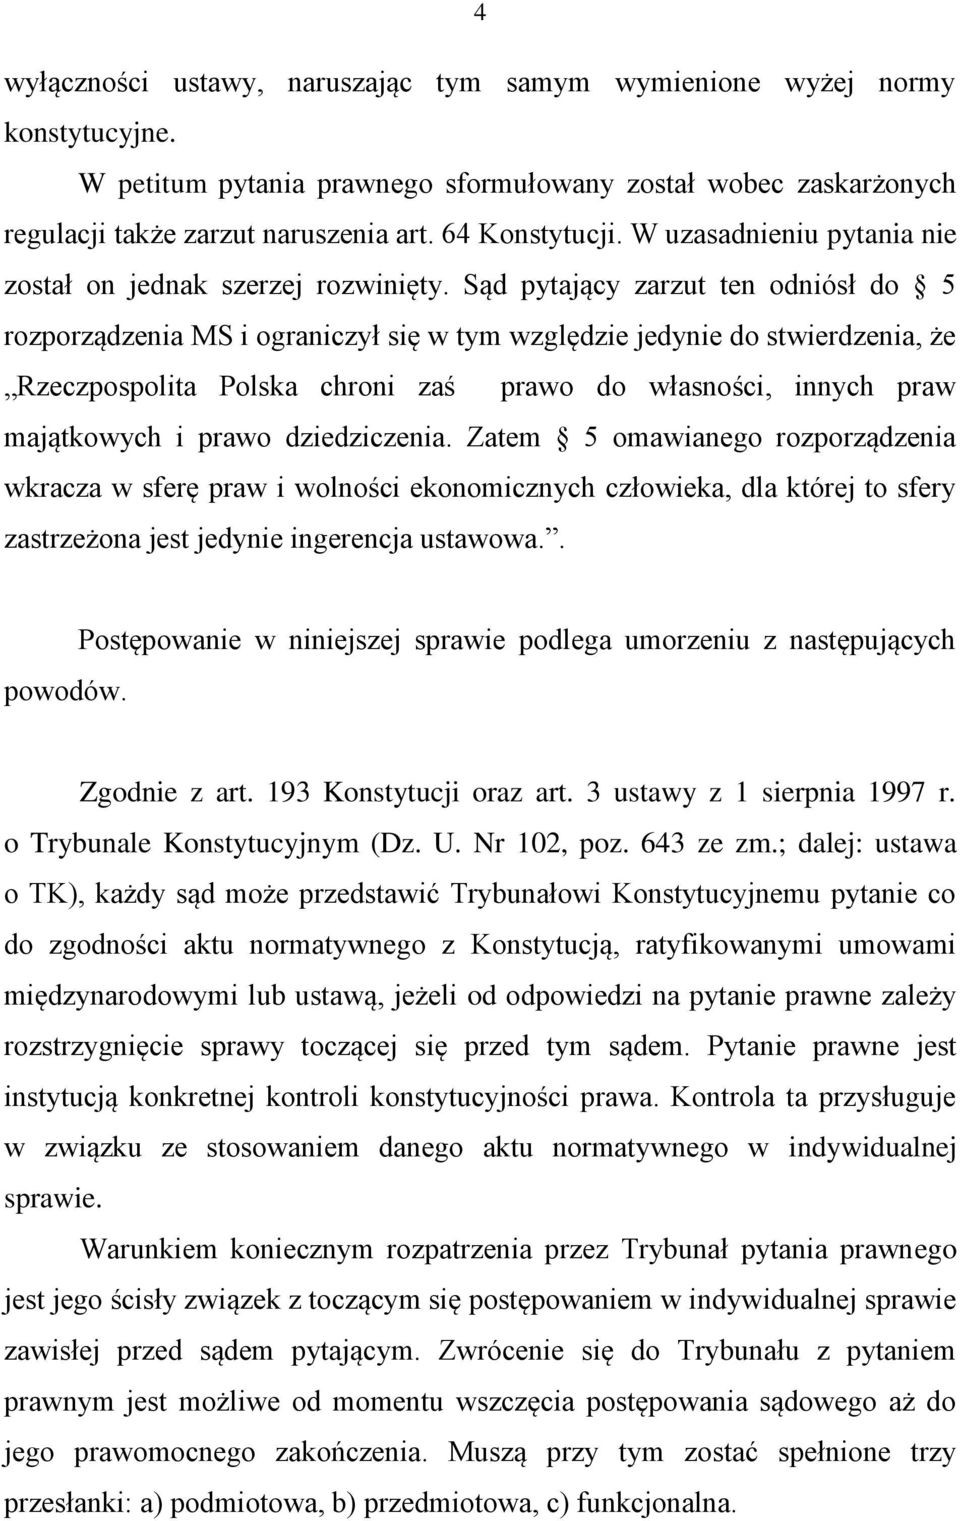 Sąd pytający zarzut ten odniósł do 5 rozporządzenia MS i ograniczył się w tym względzie jedynie do stwierdzenia, że Rzeczpospolita Polska chroni zaś prawo do własności, innych praw majątkowych i